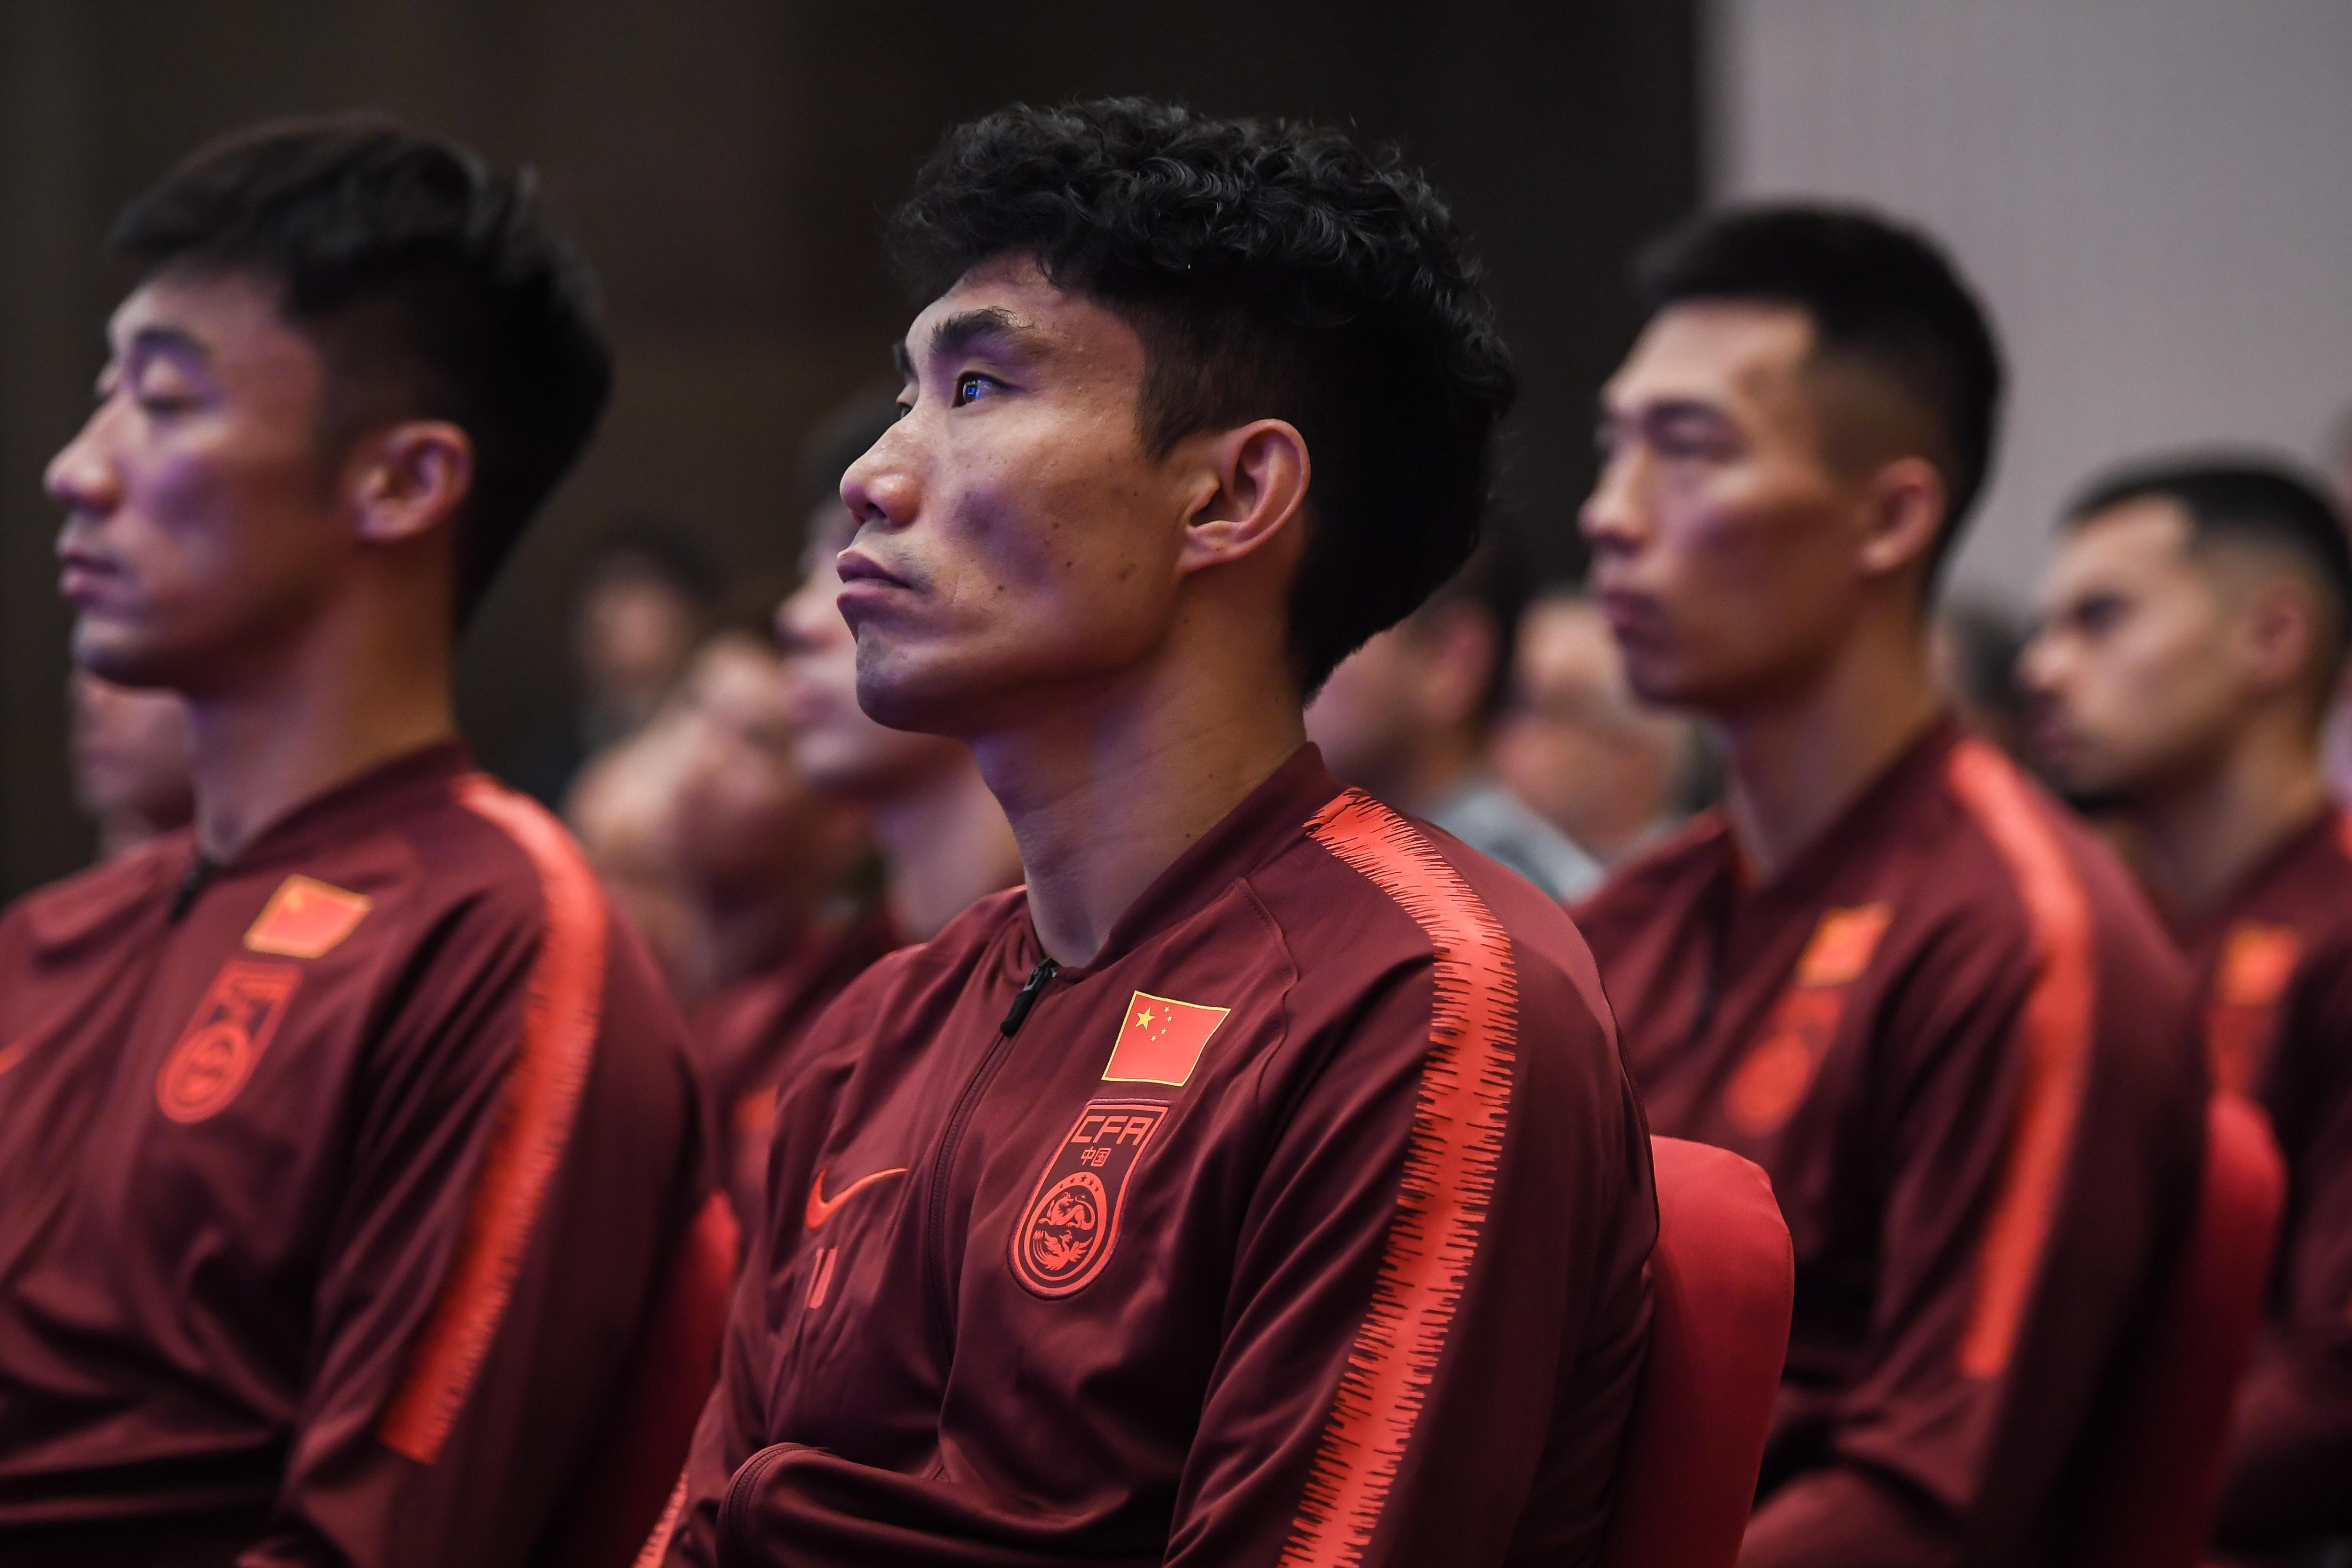 中国国家男子足球队(为什么没有英国国家男子足球队)